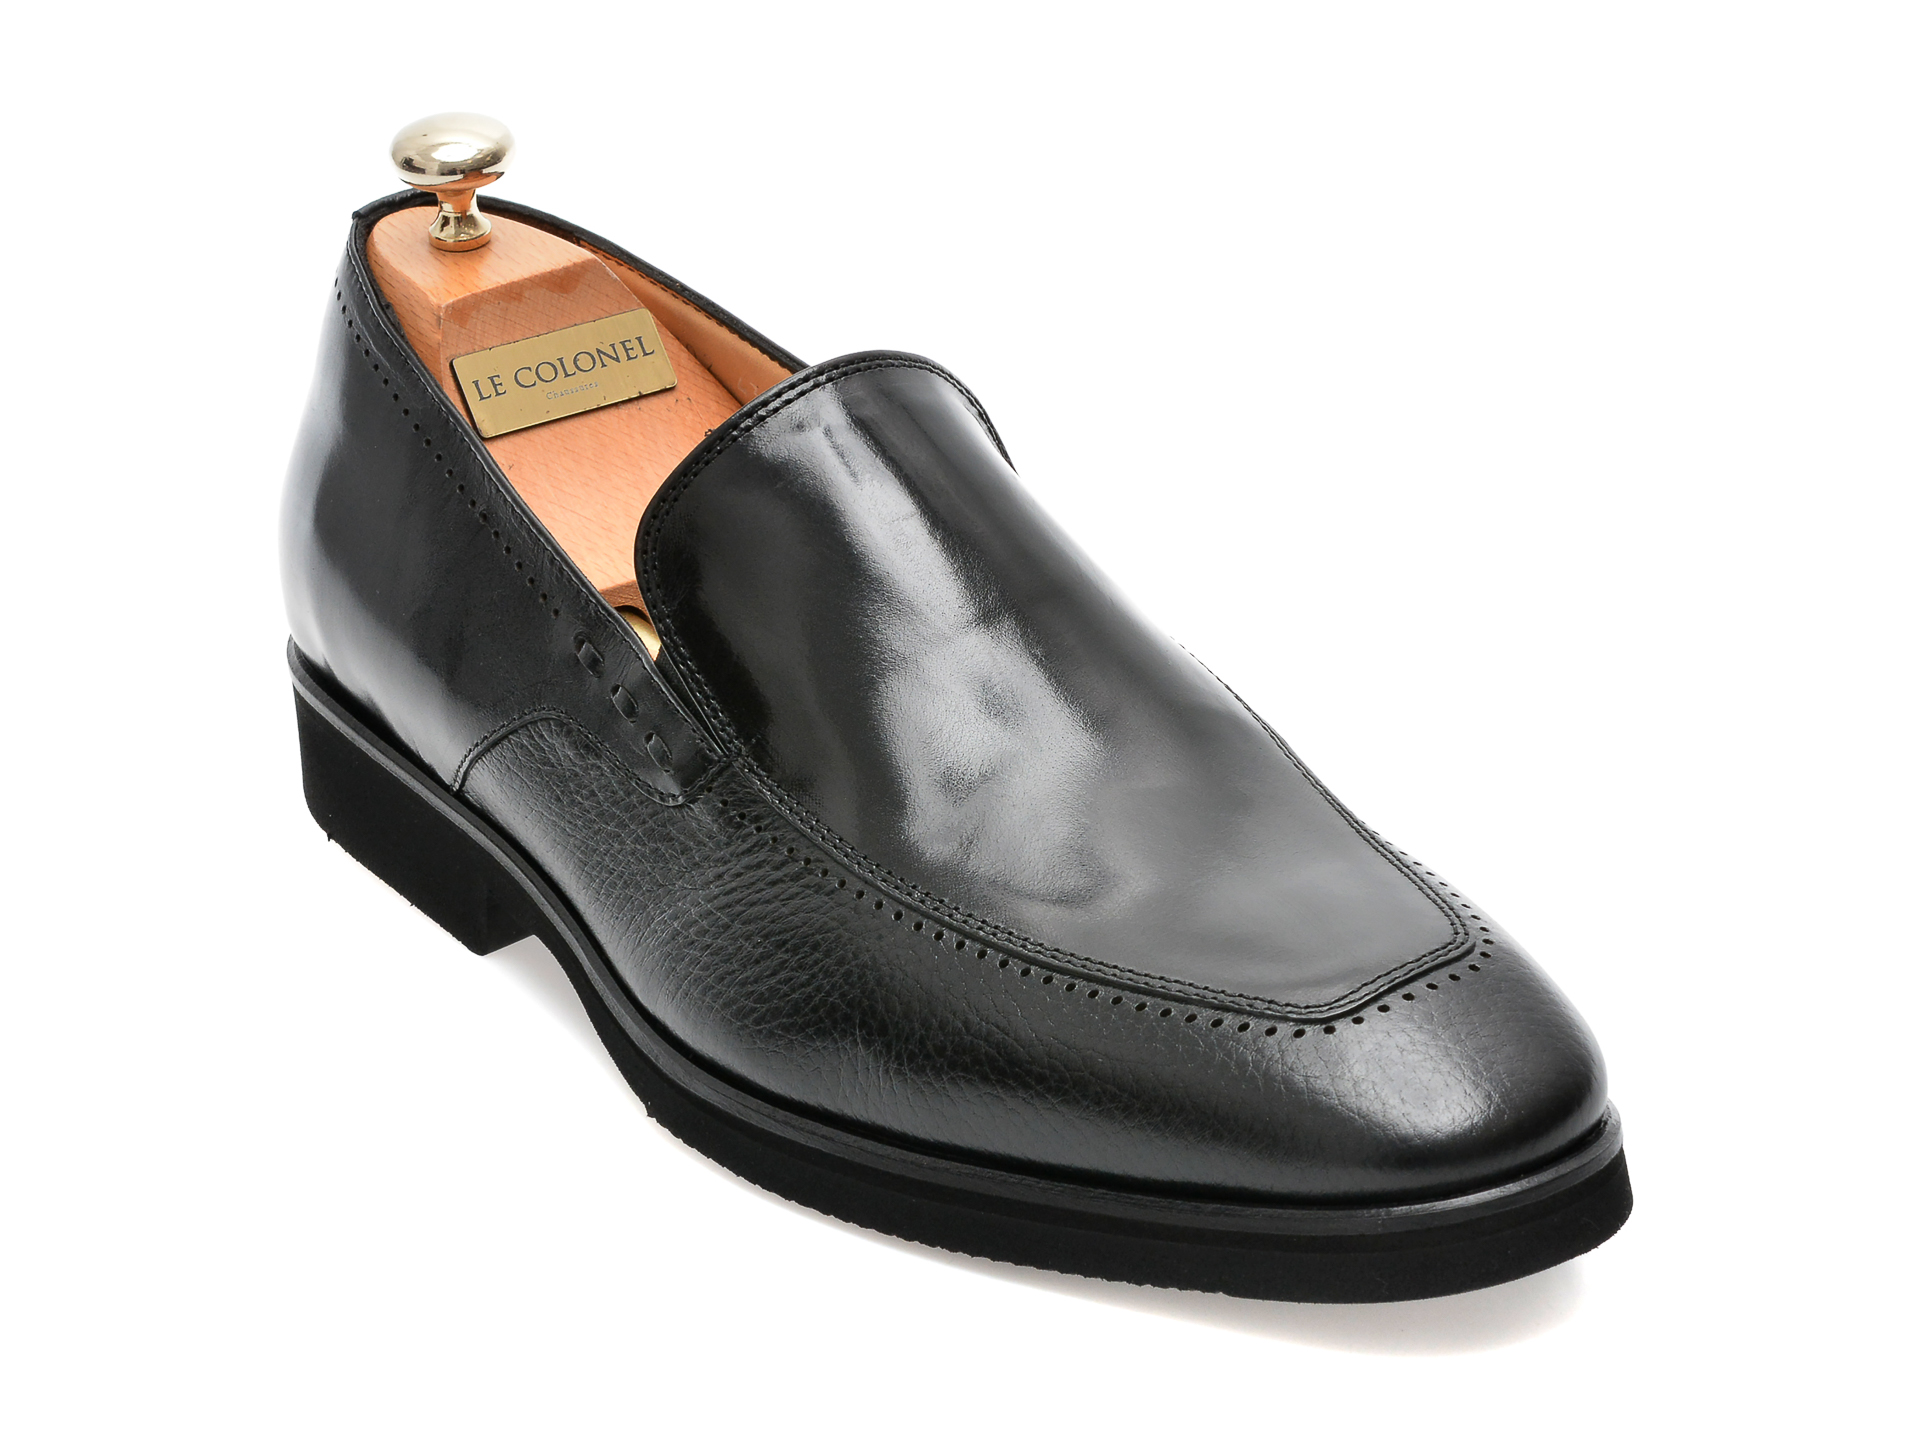 Pantofi LE COLONEL negri, 48702, din piele naturala Le Colonel Le Colonel